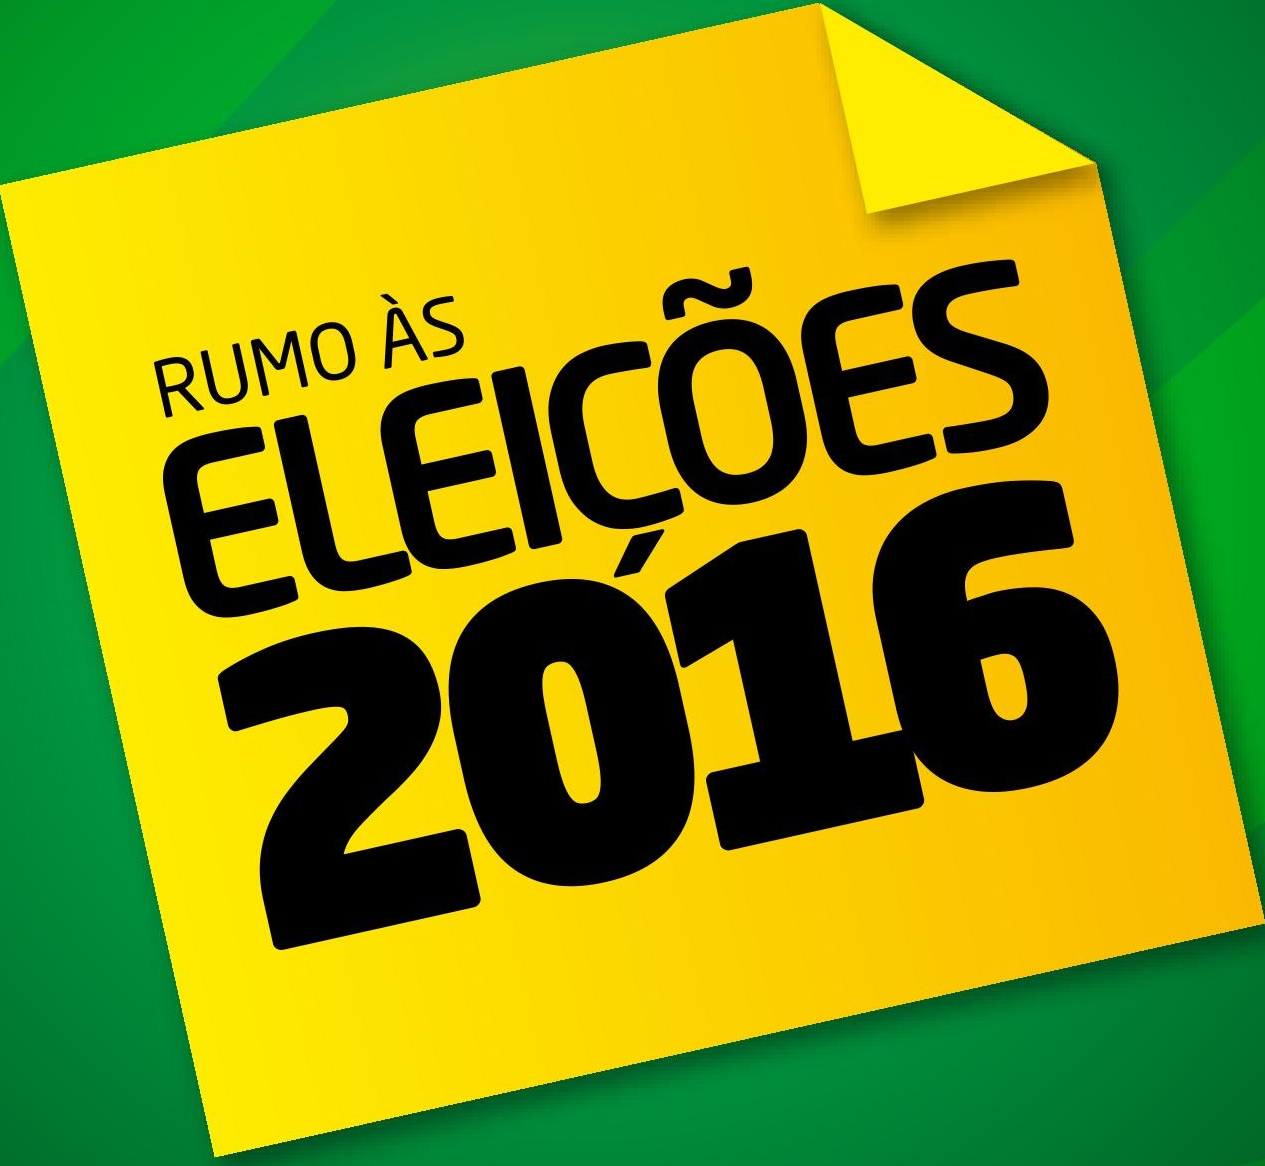 Rumo-as-eleições-2016